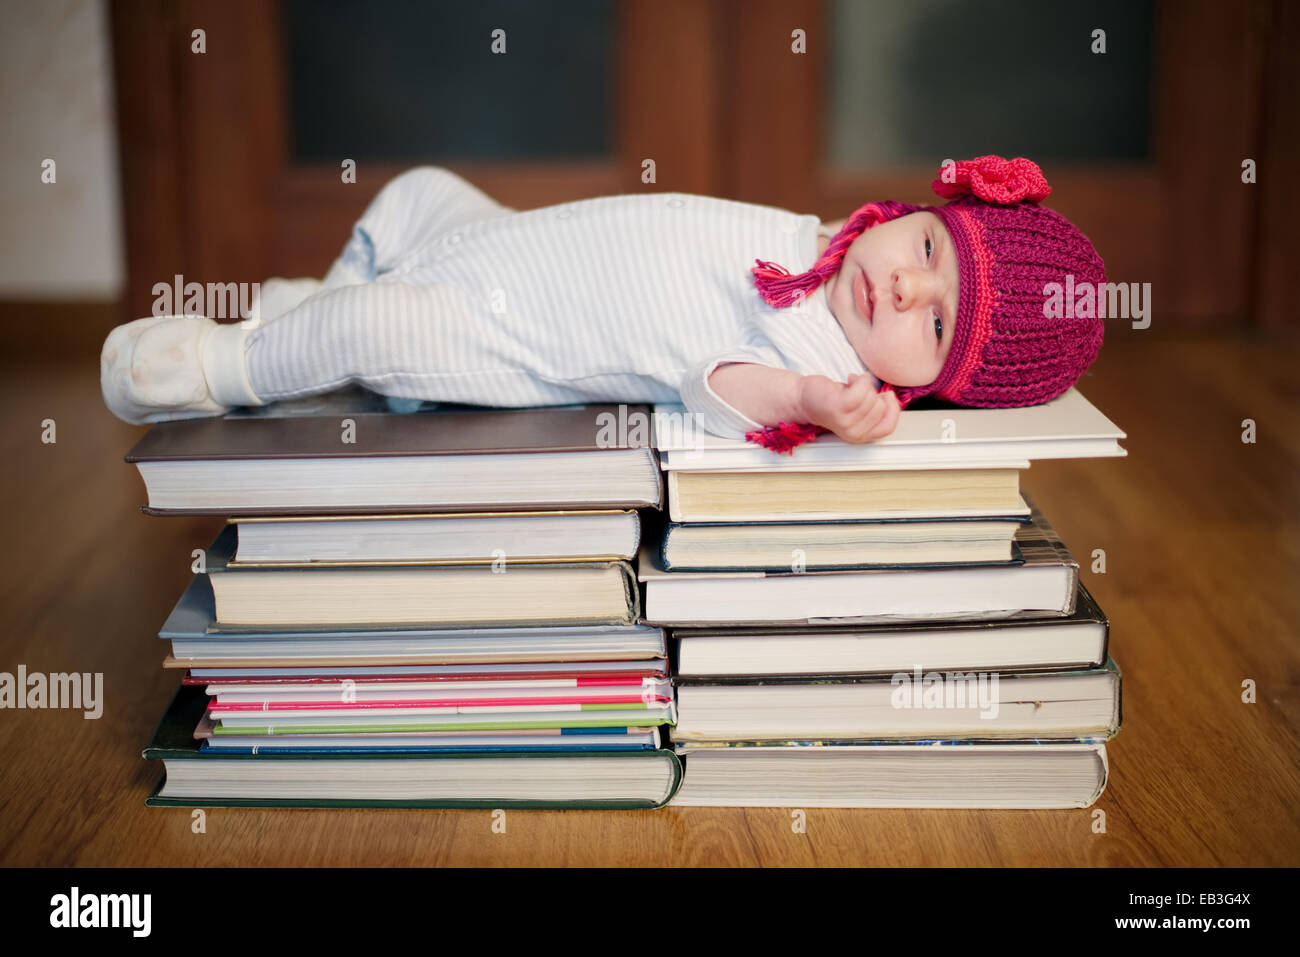 Bébé dort sur pile de livres Banque D'Images